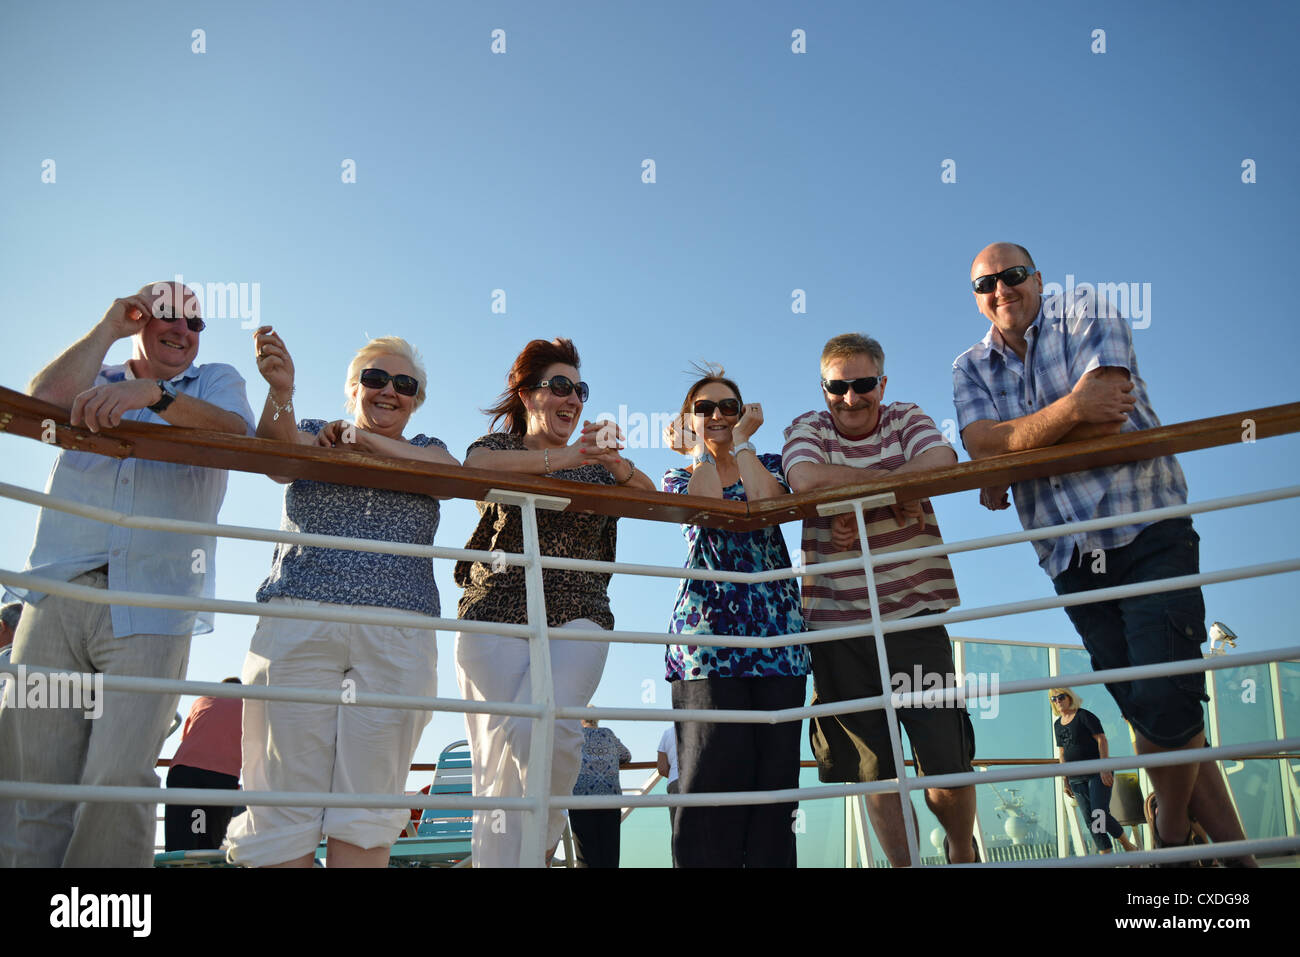 Passagiere von Geländer auf Royal Caribbean "Grandeur of the Seas" Kreuzfahrtschiff, Adria, Mittelmeer, Europa Stockfoto